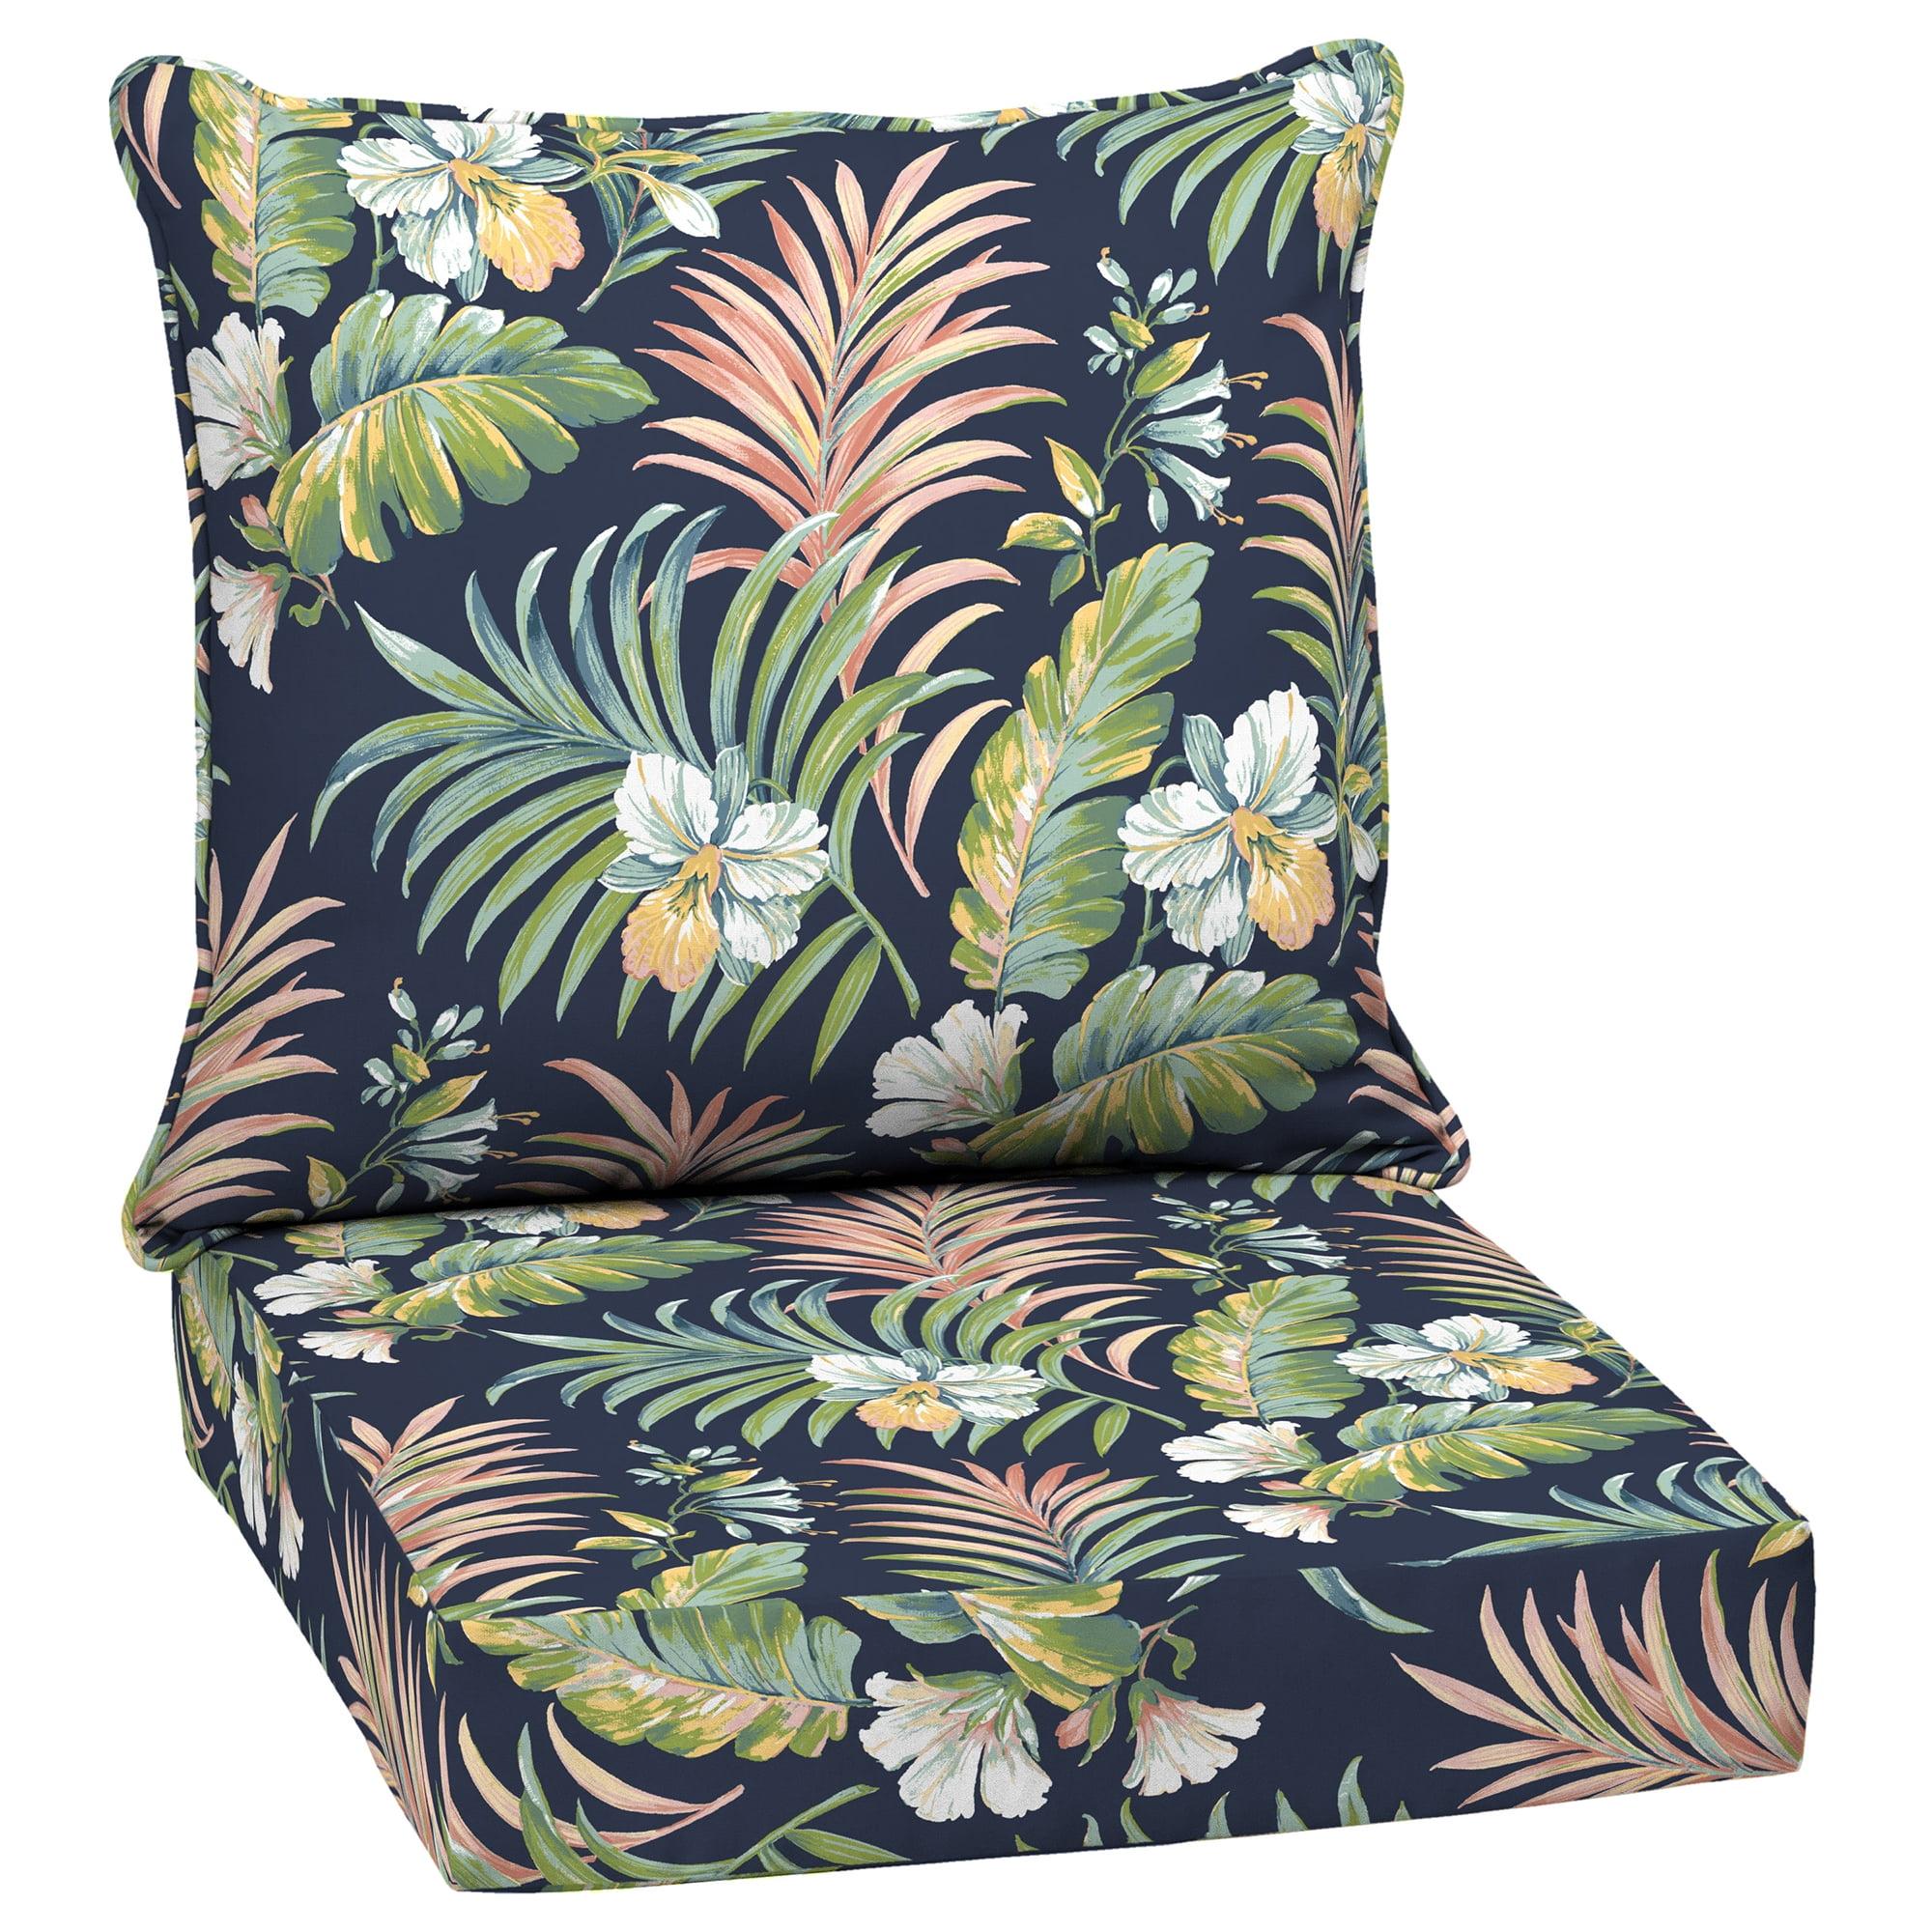 Simone Blue Tropical Deep Seat Outdoor Chair Cushion Set